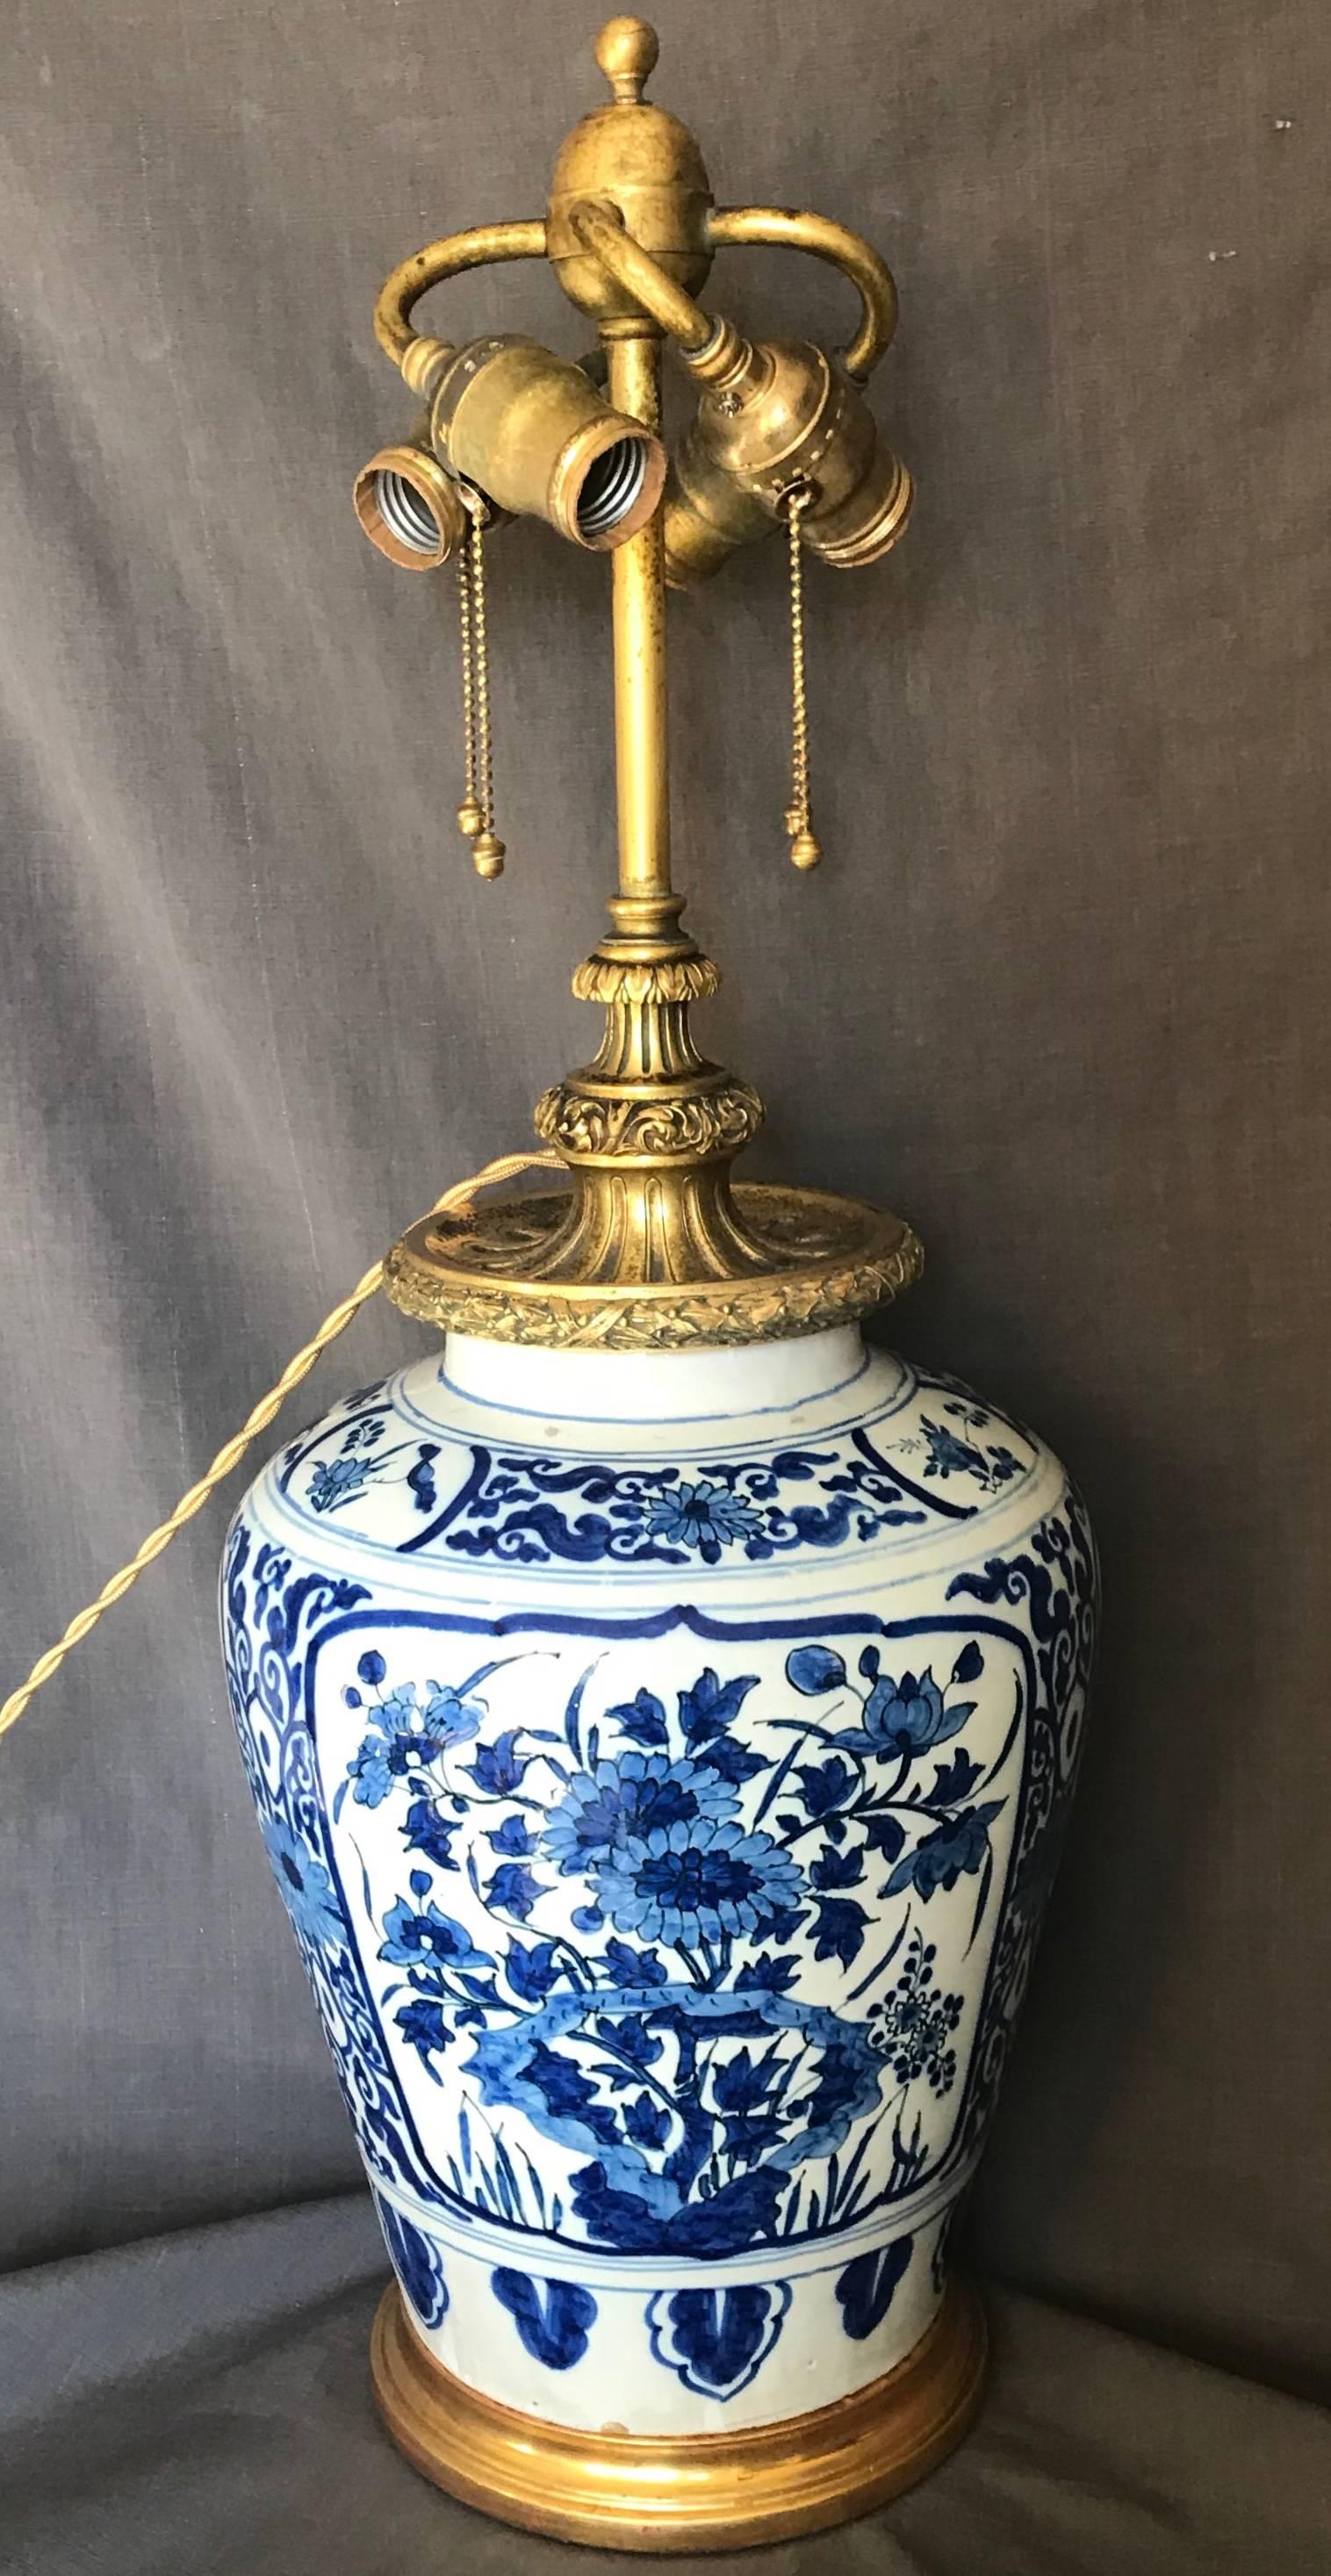 Lampe hollandaise Delft bleue et blanche. Magnifique grand vase en faïence de Delft monté comme une lampe avec une décoration florale audacieuse et des bordures avec une spectaculaire monture de quatre lampes en bronze doré Calder plus tard sur une